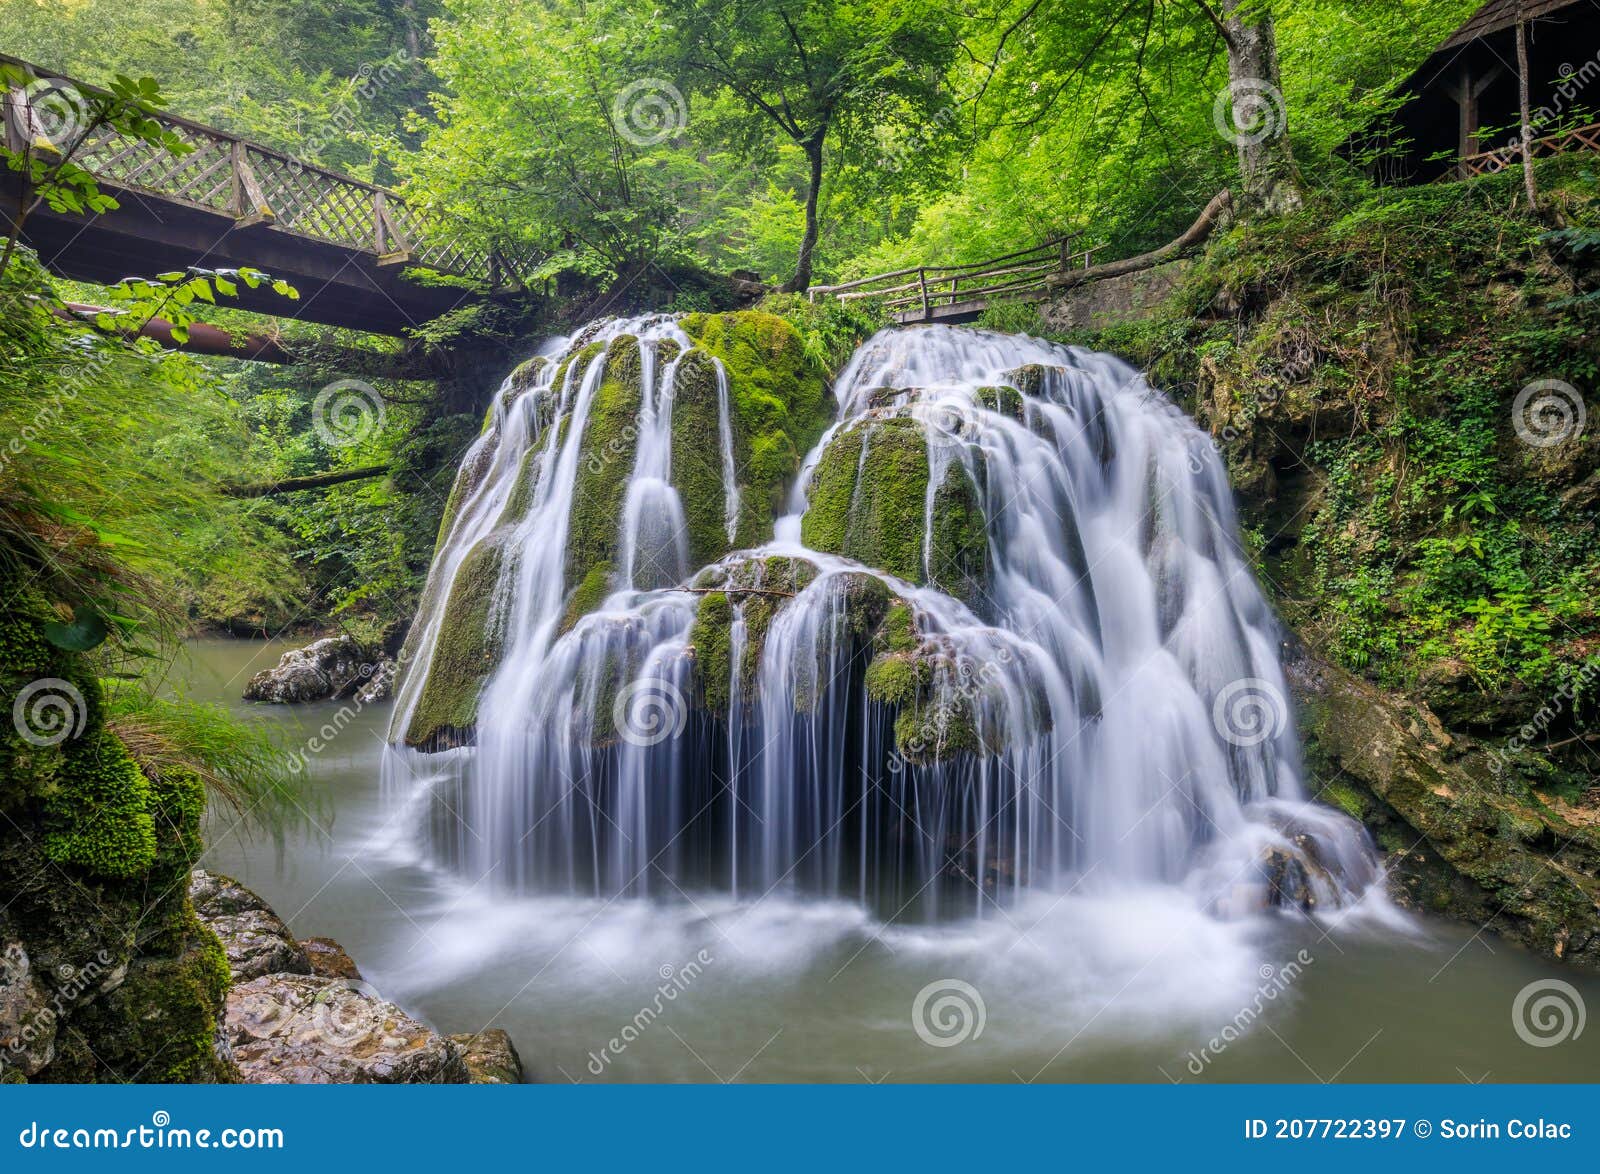 bigar waterfall, romania